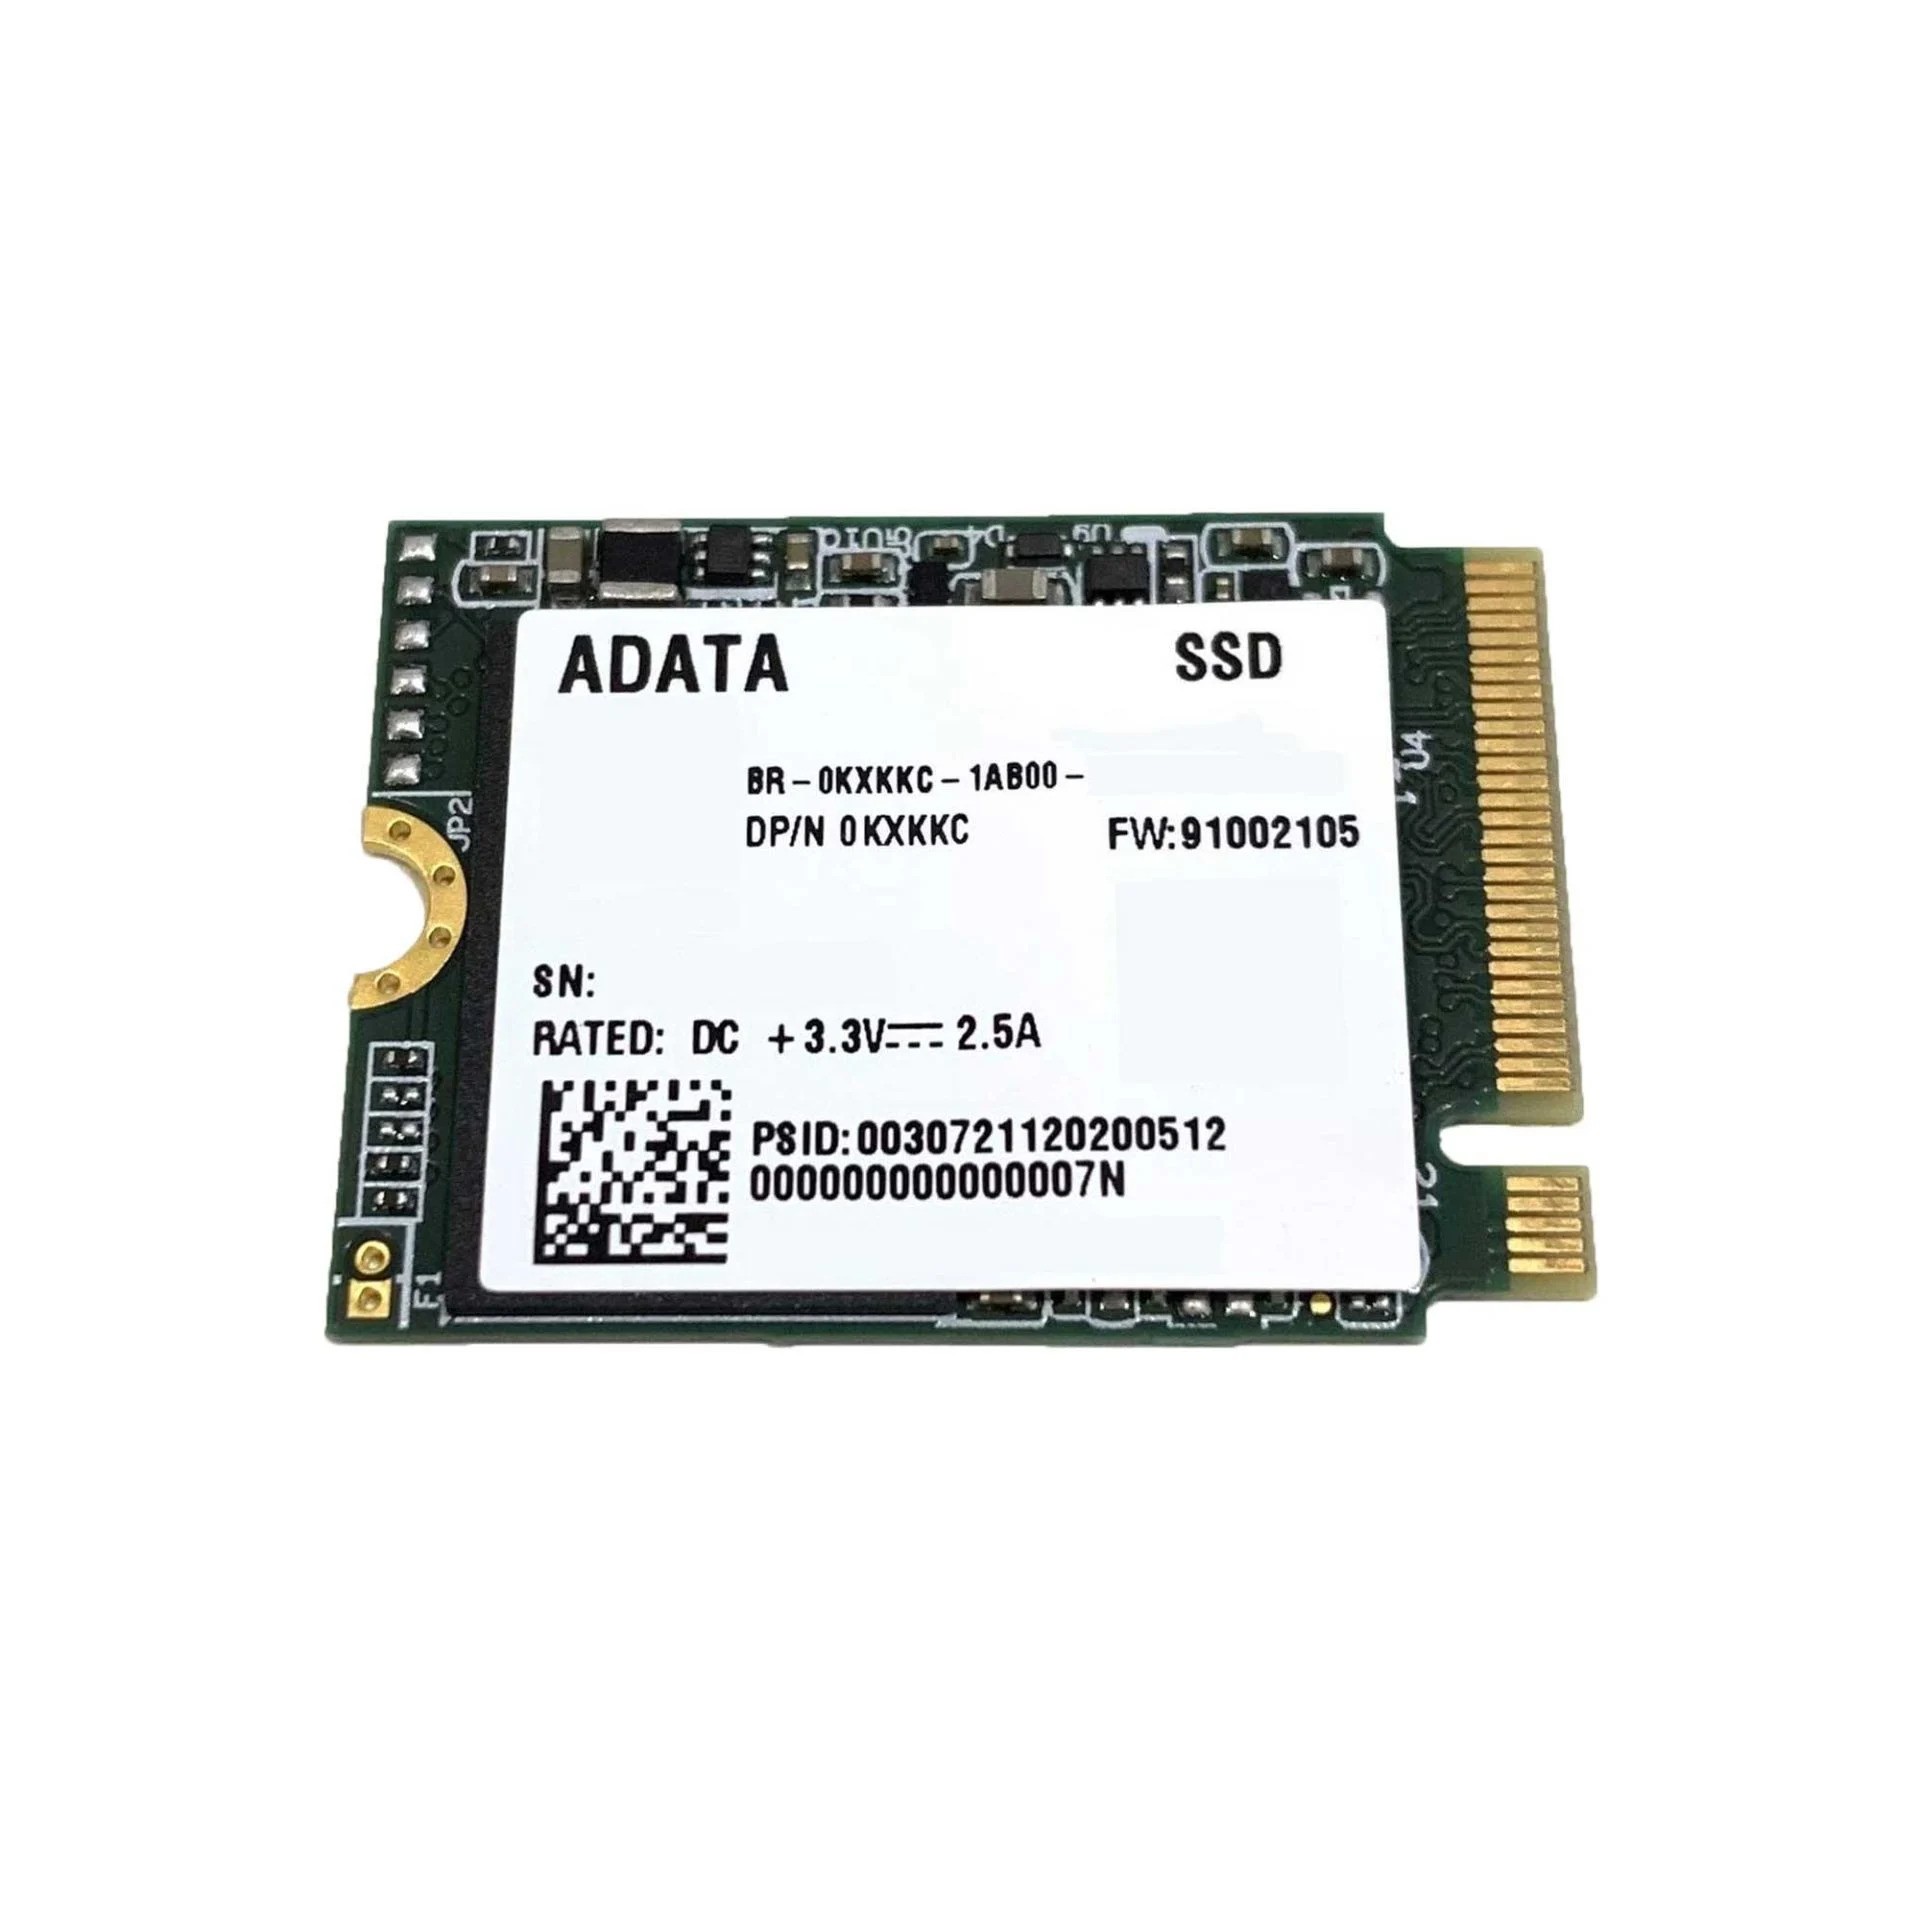 ADATA SM2P41C3-256GC2 256GB M.2 2230 PCI-E NVME SSD